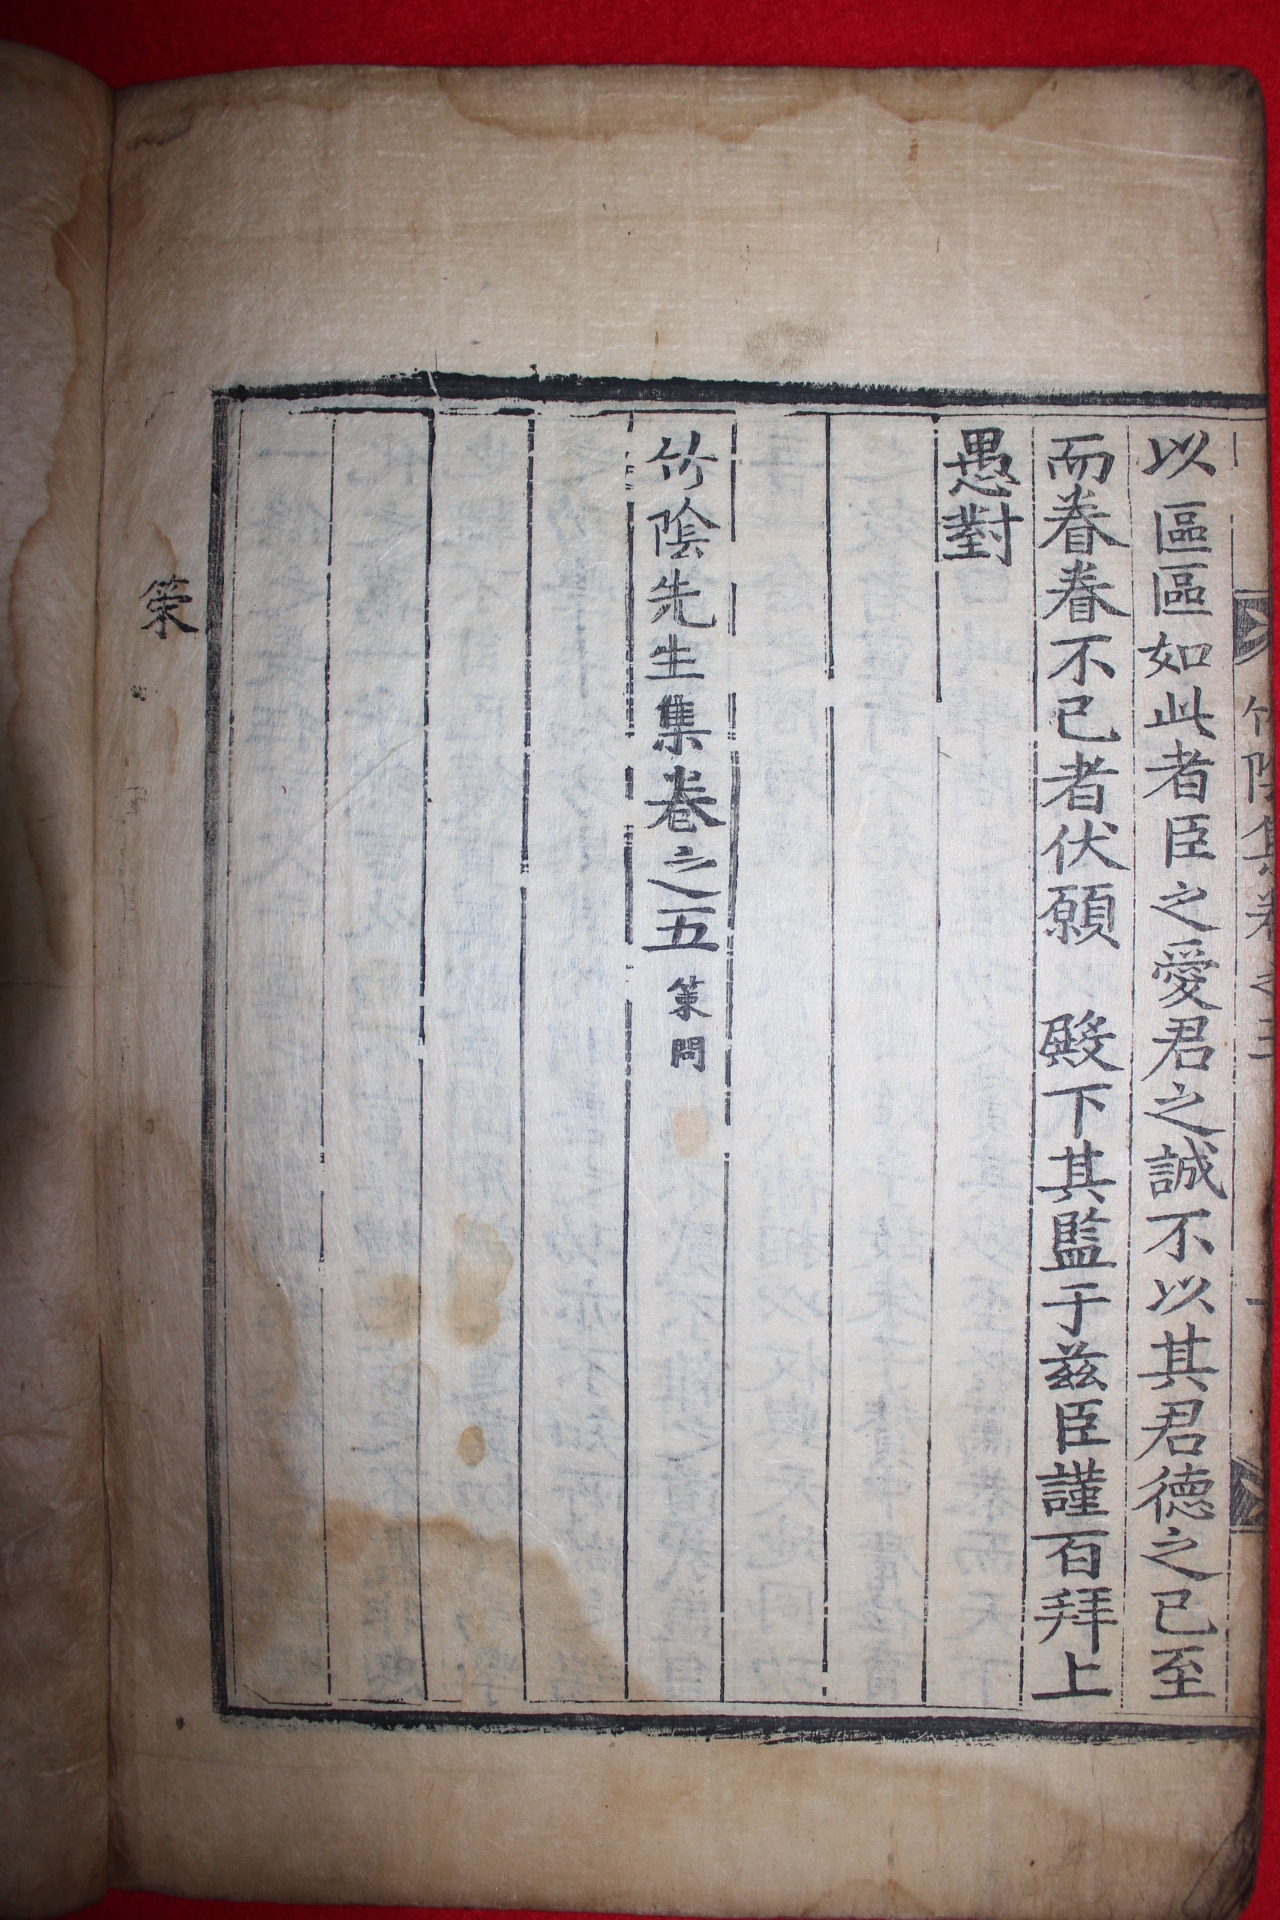 1704년 고목판본 조희일(趙希逸) 죽음선생집(竹陰先生集)권5  1책